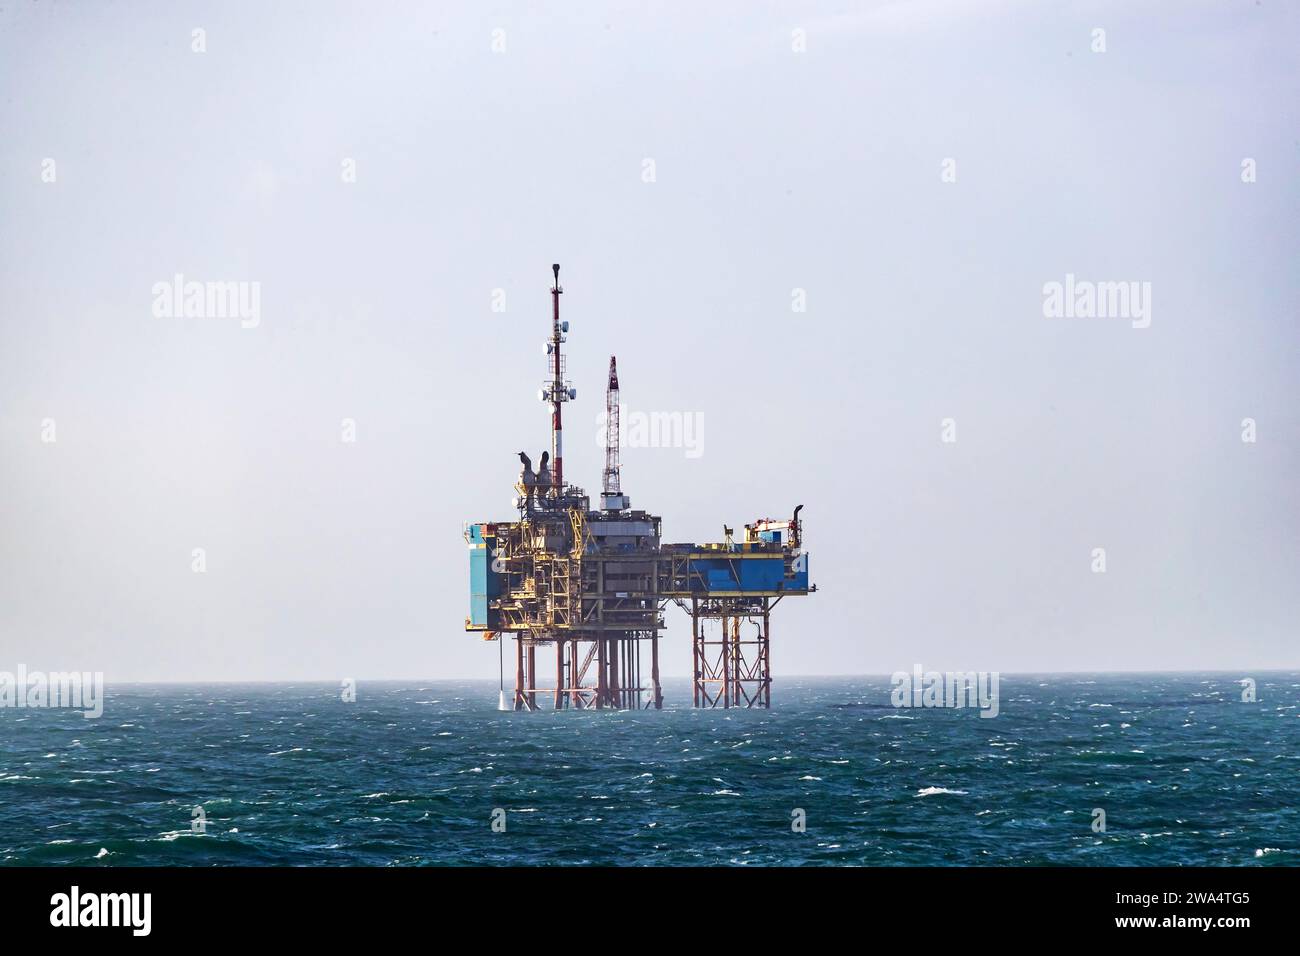 Nordsee-Ölplattform an einem carm-Tag auf See. Nordsee. Stockfoto